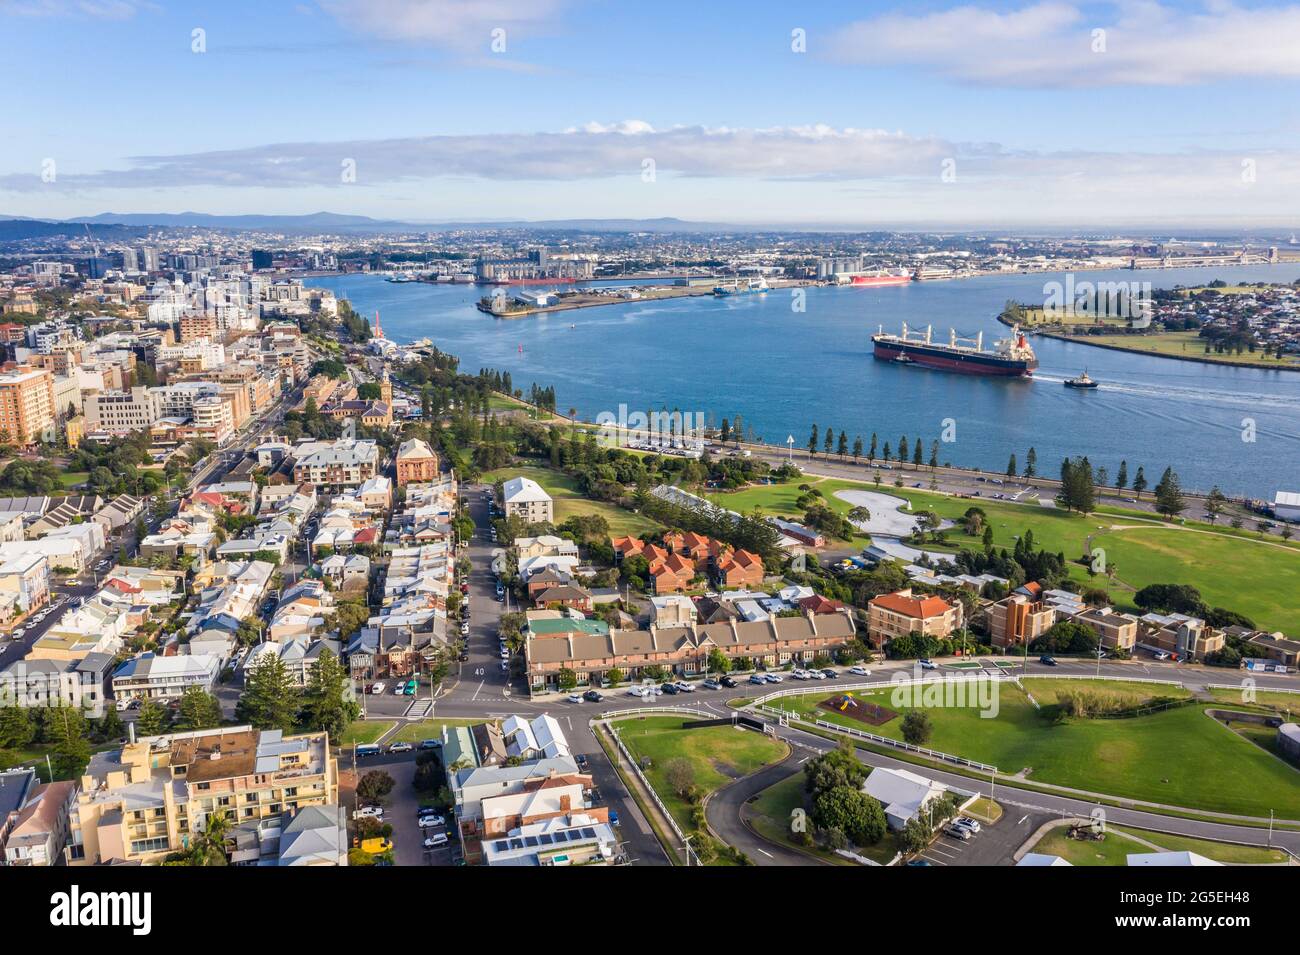 Nave che entra nel porto di Newcastle uno dei più grandi porti di esportazione di carbone del mondo. - Newcastle NSW Australia Foto Stock